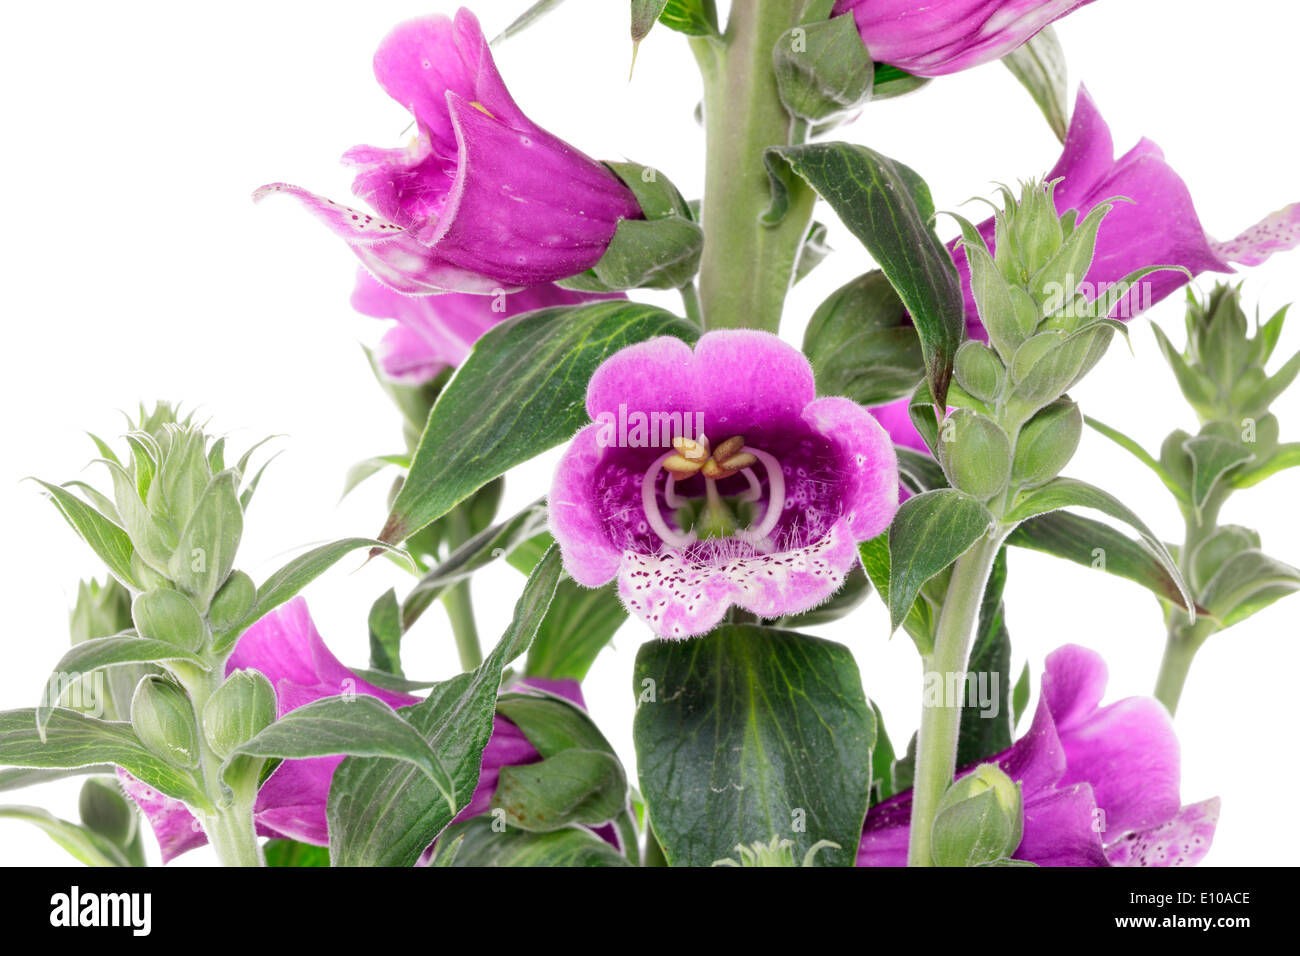 Foxglove (Digitalis purpurea) Stock Photo